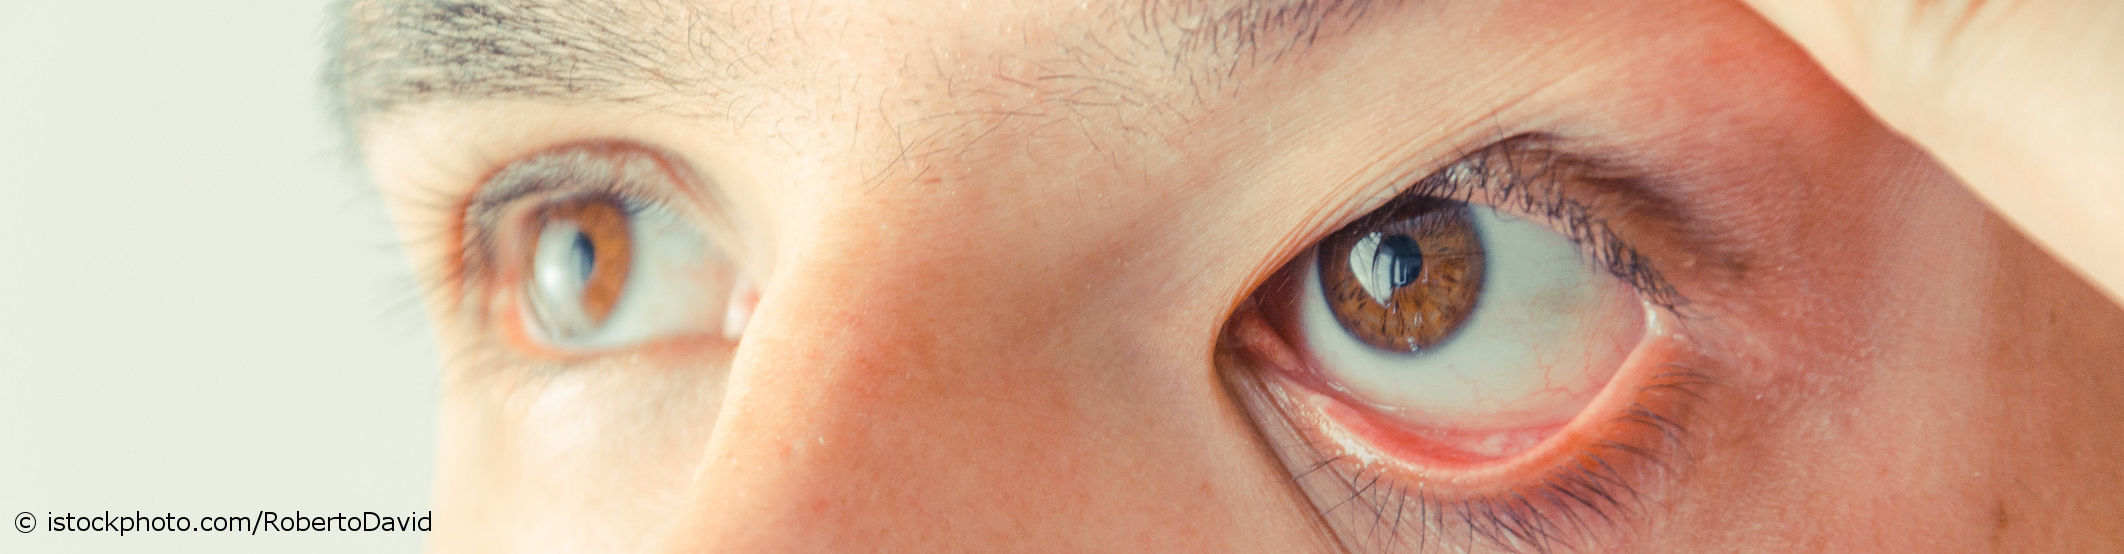 Trockene Augen Symptome